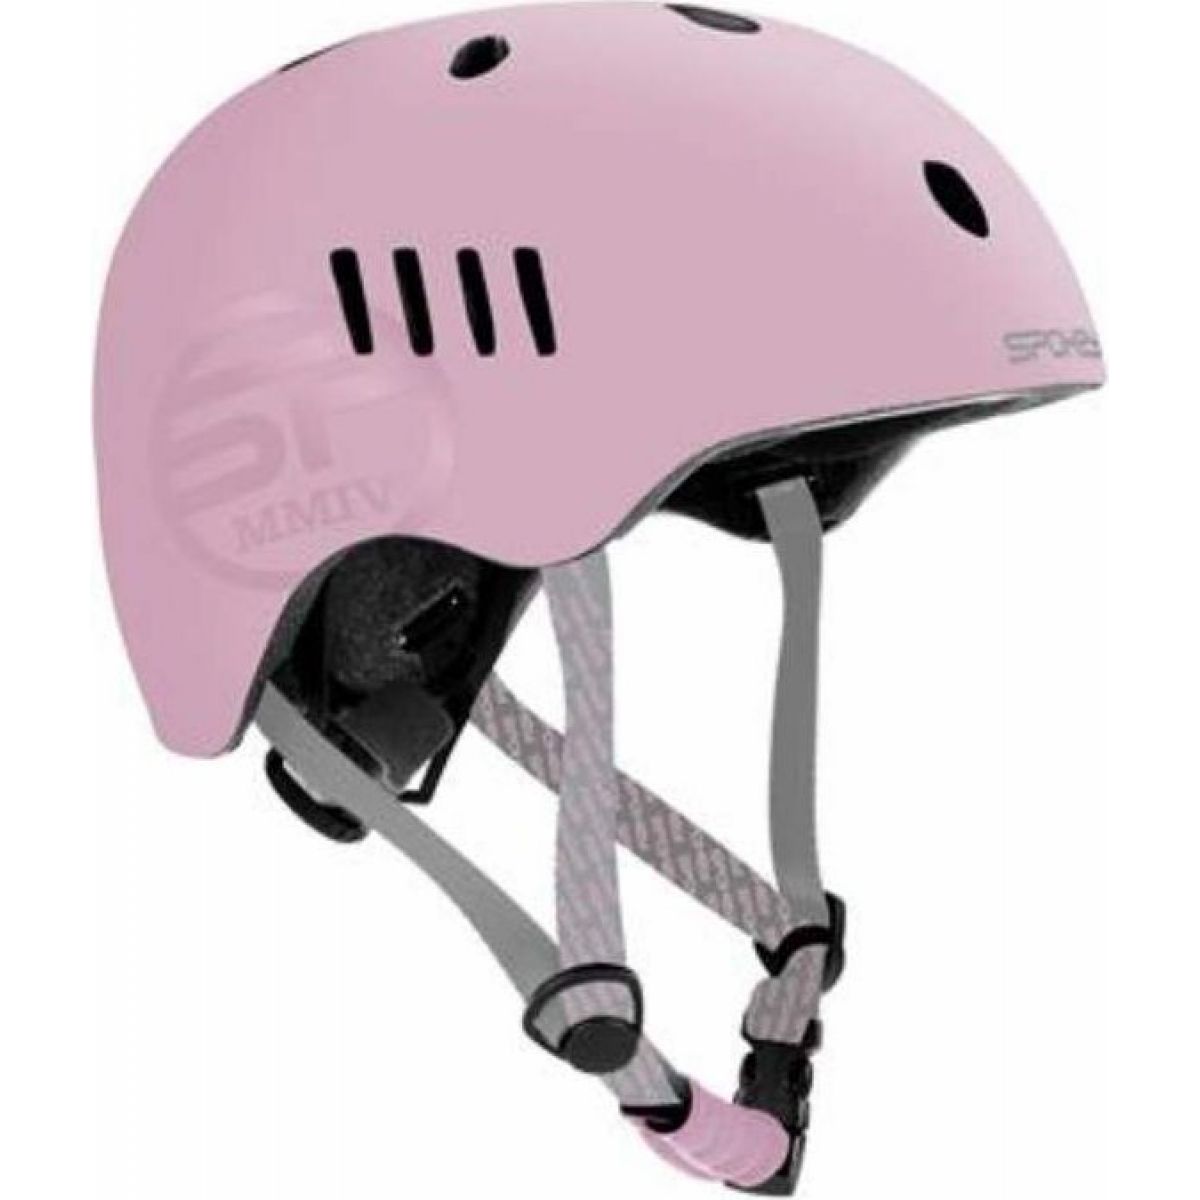 Spokey Pumptrack Juniorská cyklistická BMX přilba IN-MOLD, 48 - 54 cm, růžová